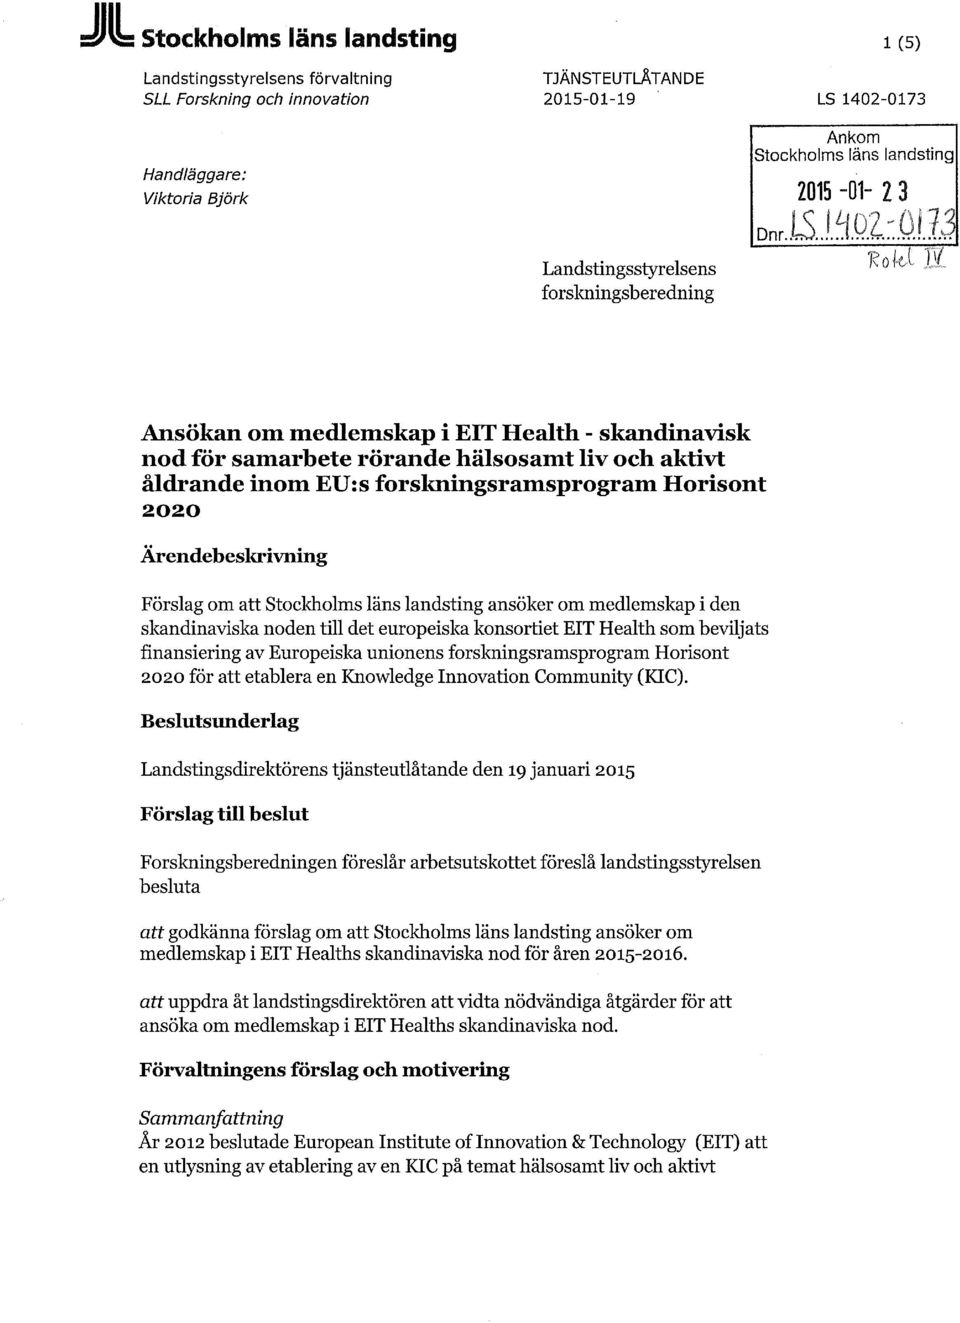 Ärendebeskrivning Förslag om att Stockholms läns landsting ansöker om medlemskap i den skandinaviska noden till det europeiska konsortiet EIT Health som beviljats finansiering av Europeiska unionens